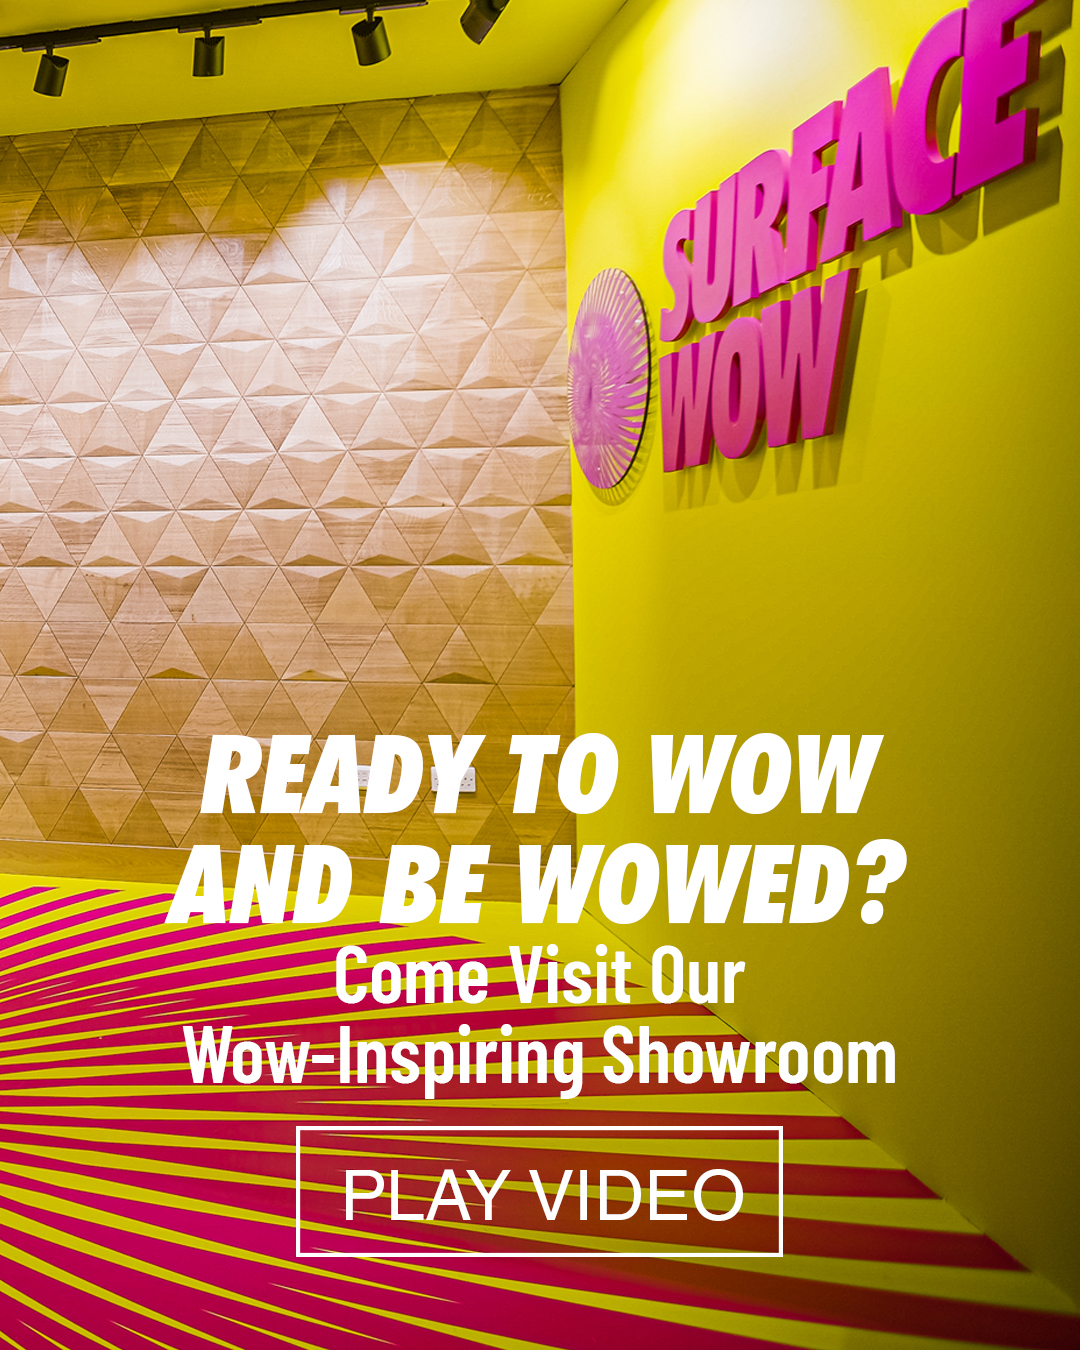 Showroom Video Overlay Image